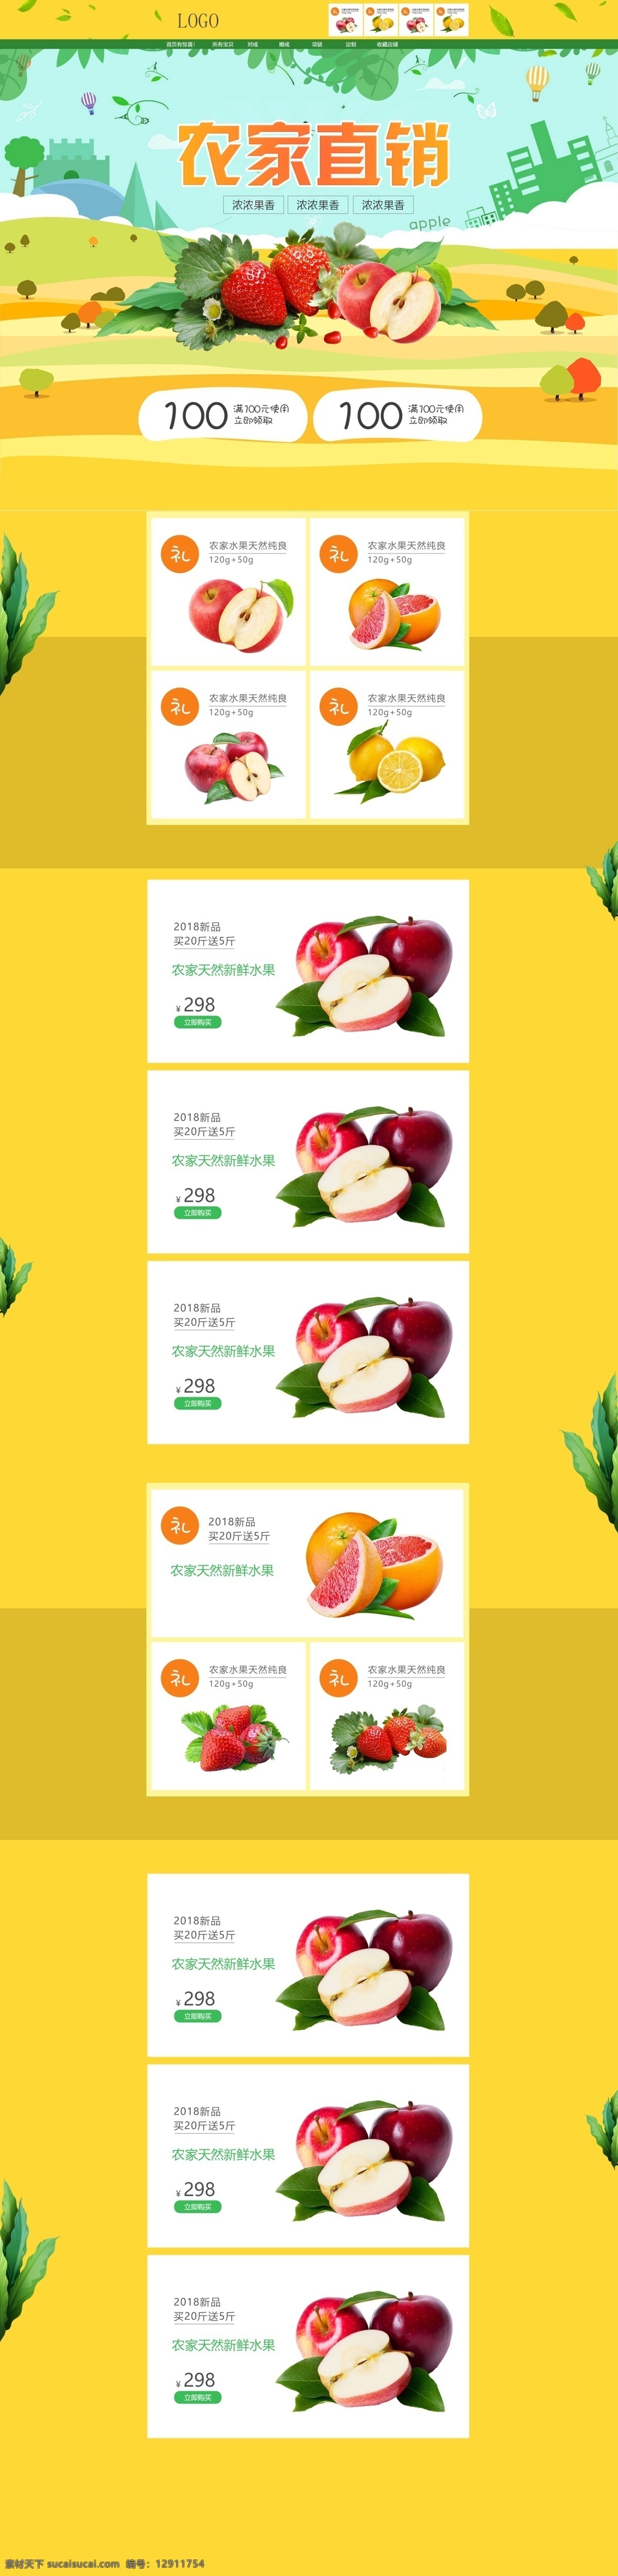 淘宝 天猫 水果 食品 零食 首页 模版 健康 绿色